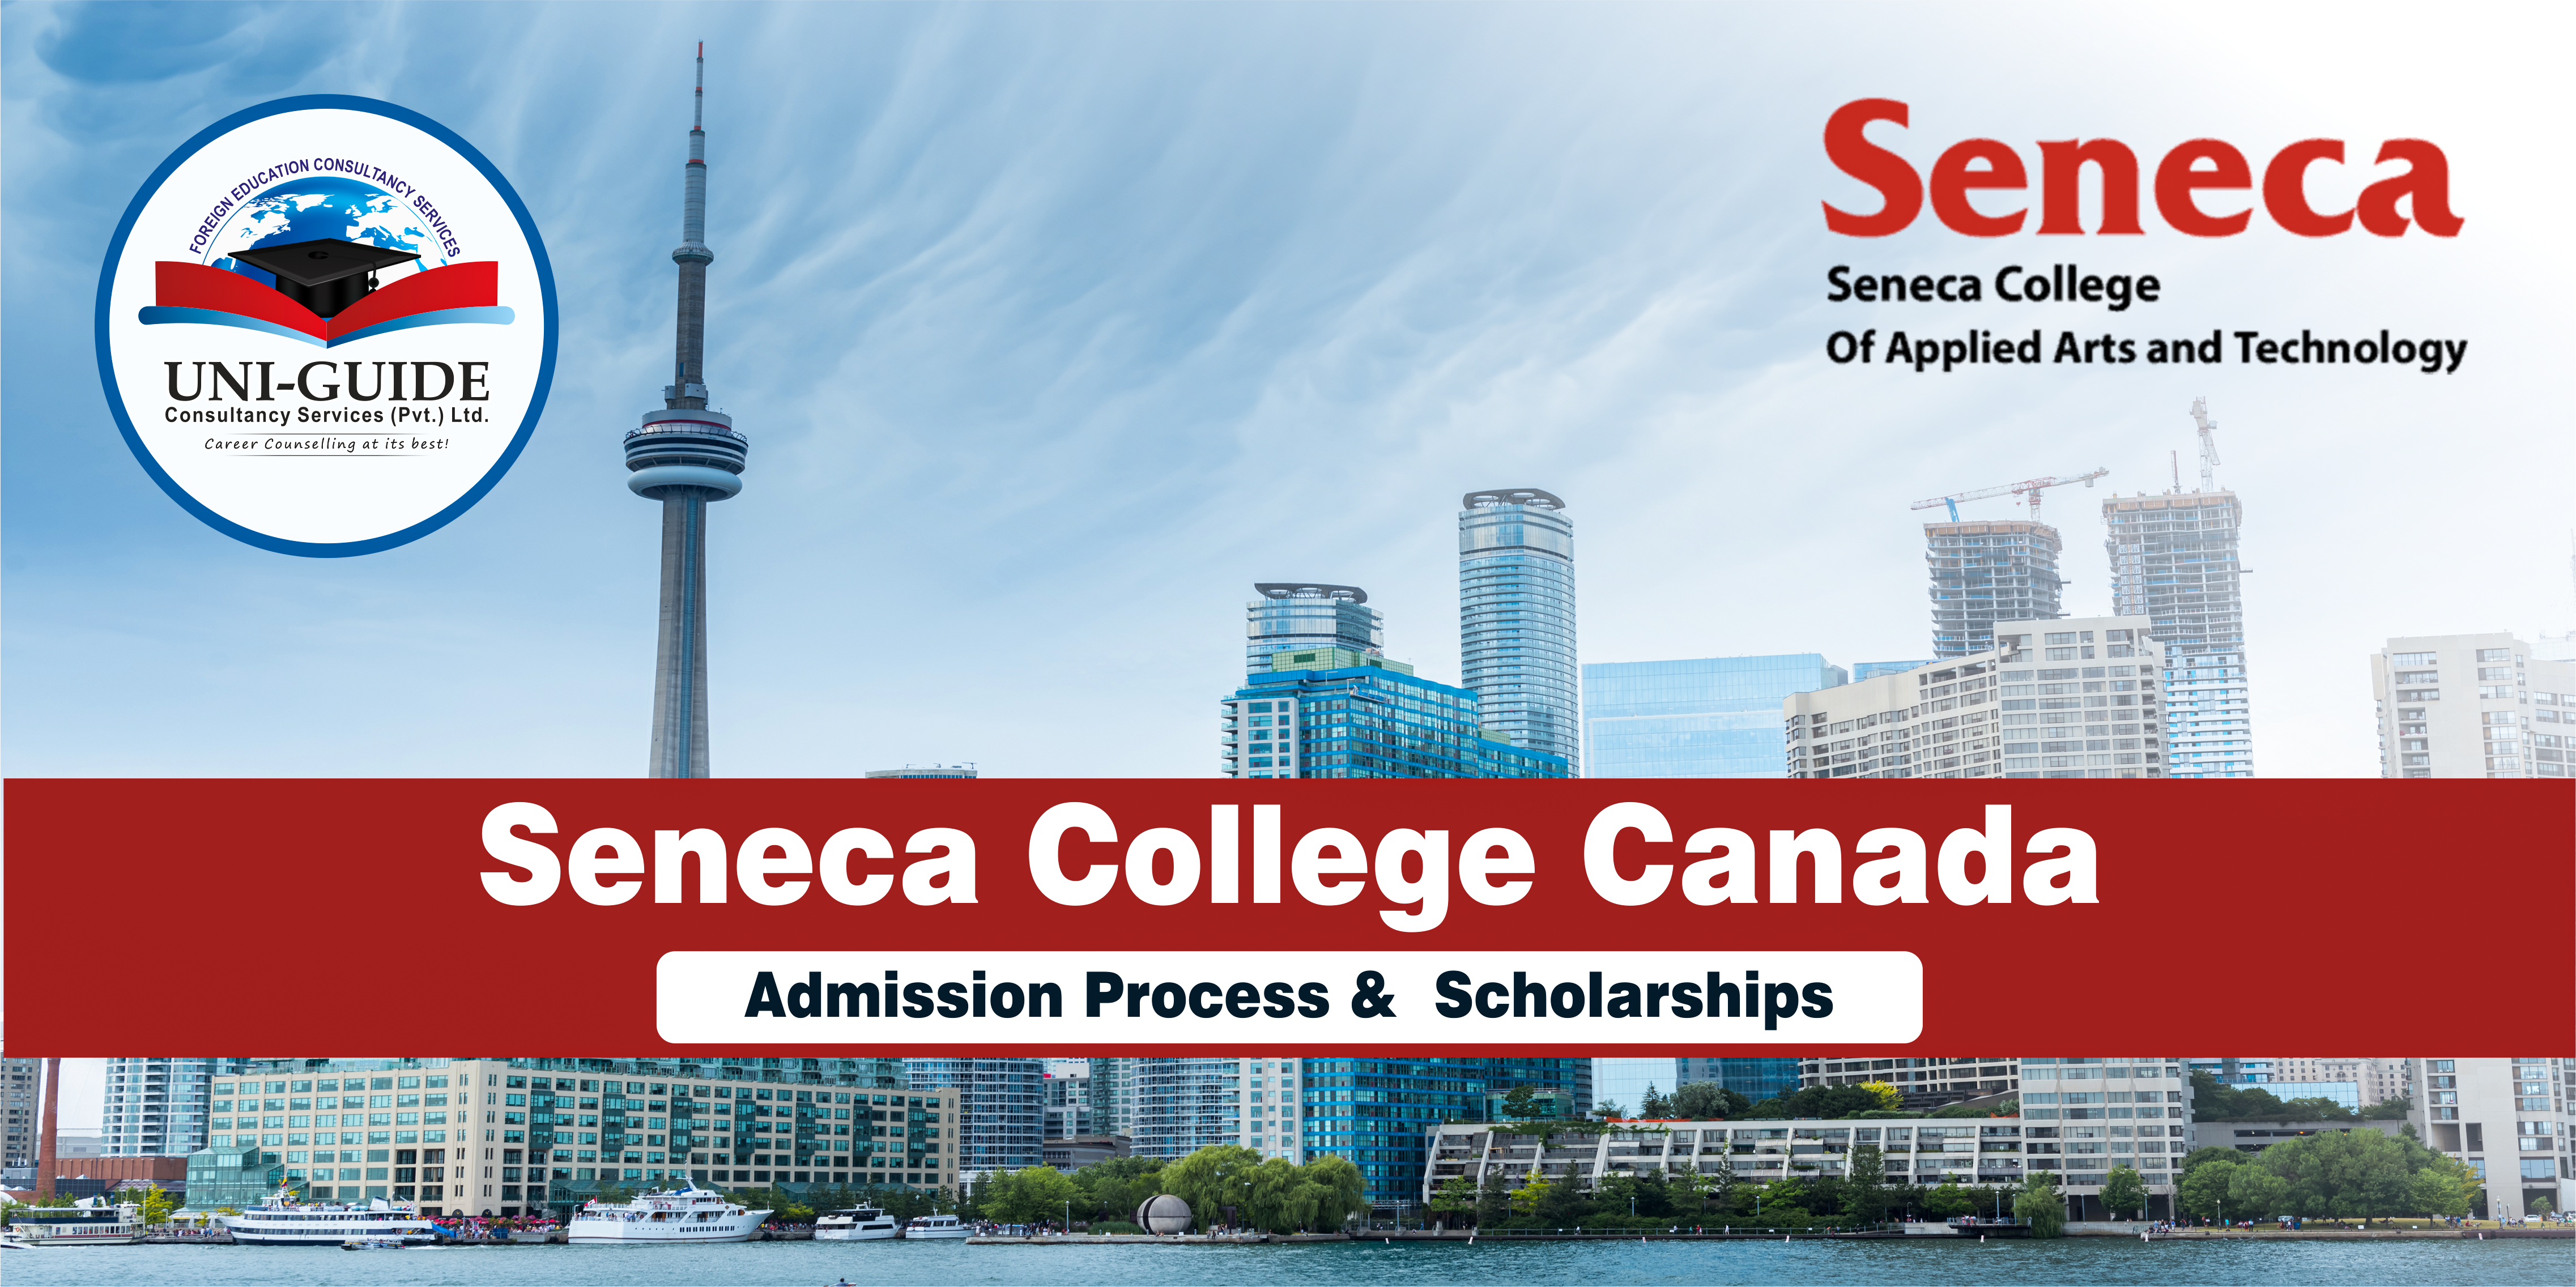 Seneca College Canada admission process